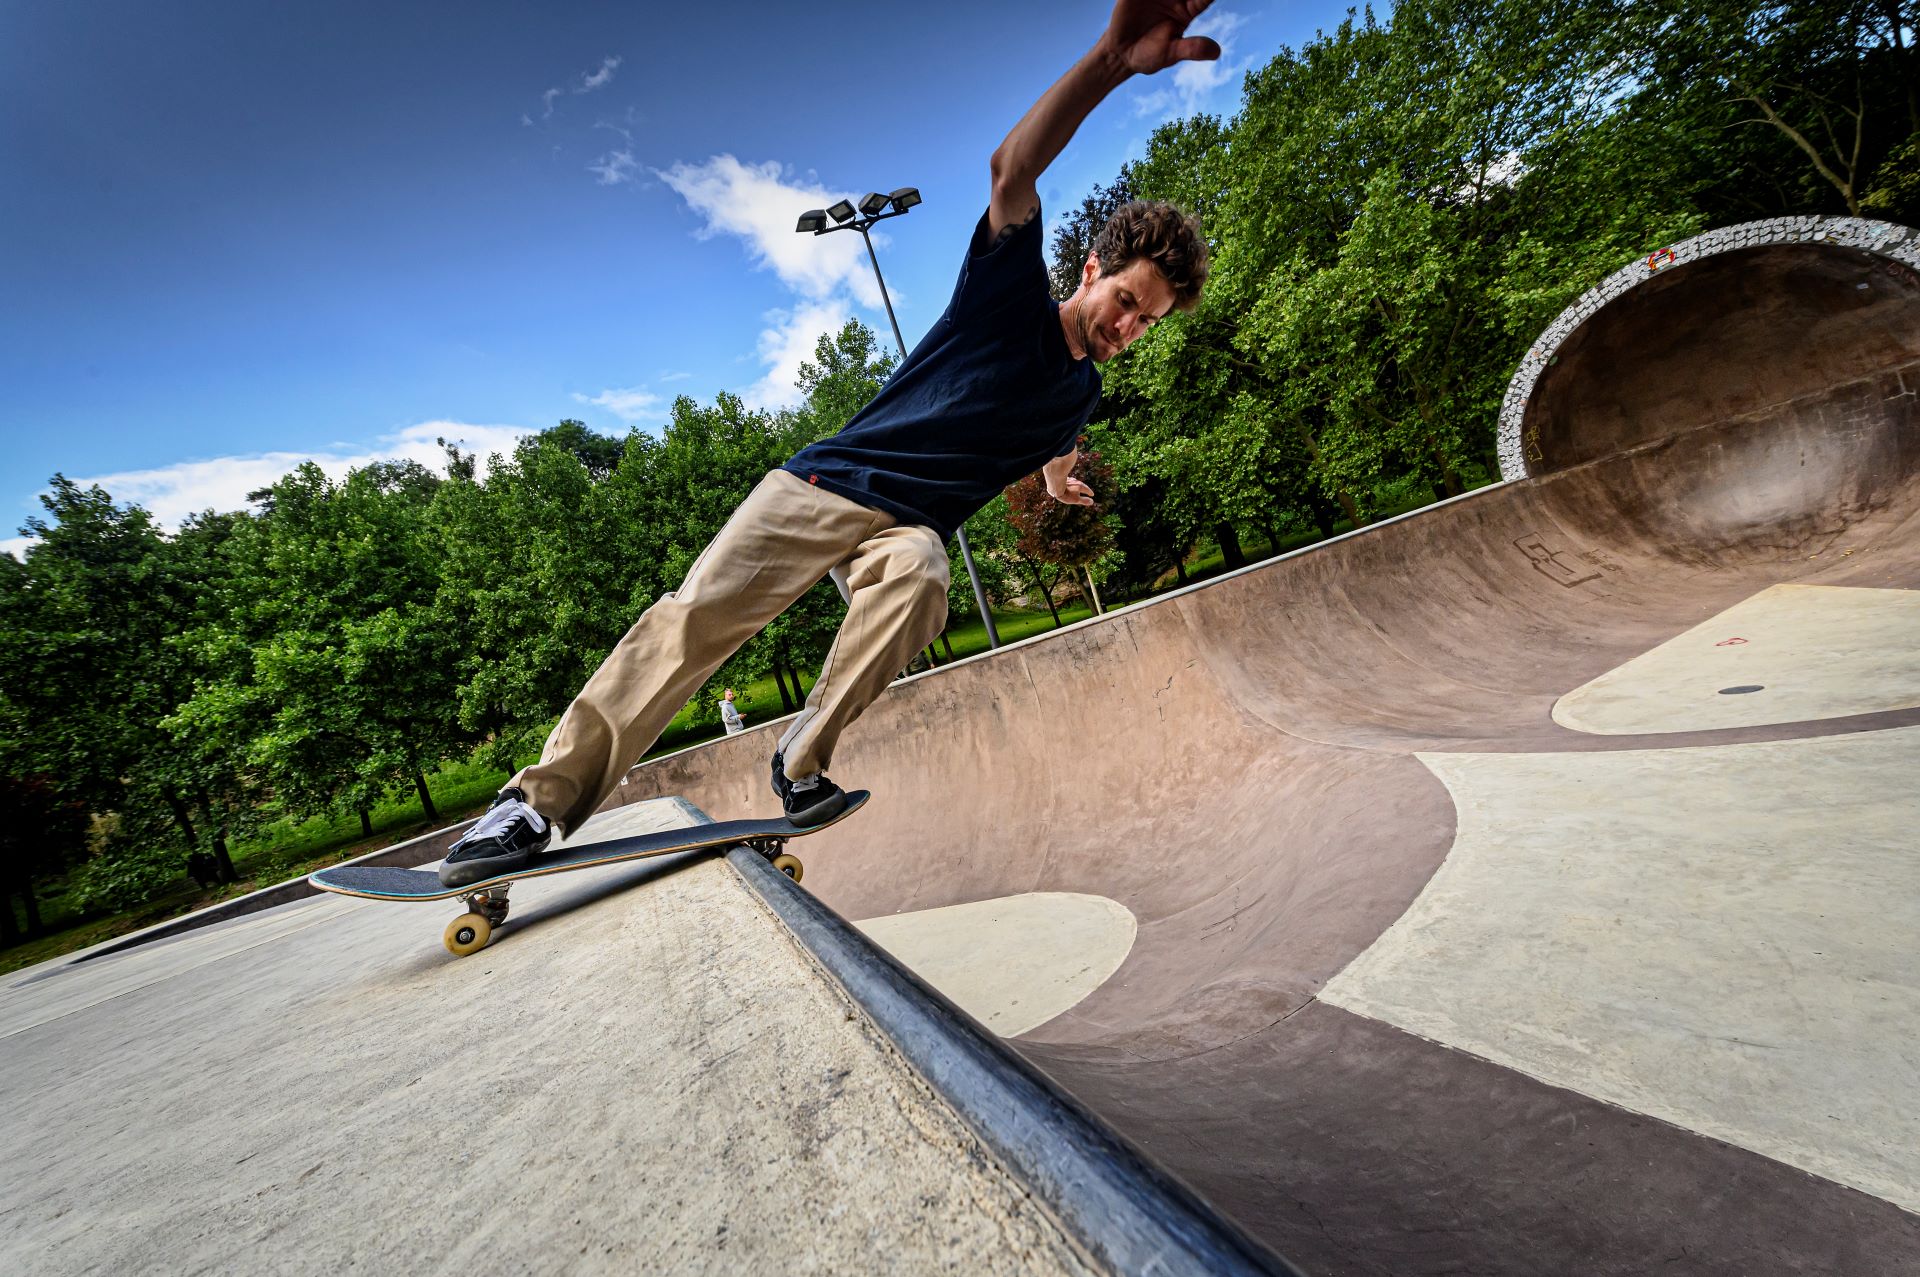 Ein Skateboarder macht einen Trick, indem er sich mit seinem Skateboard fast senkrecht auf den Boden stützt. Er befindet sich im Skatepark mit Bäumen und einem blauen Himmel im Hintergrund.